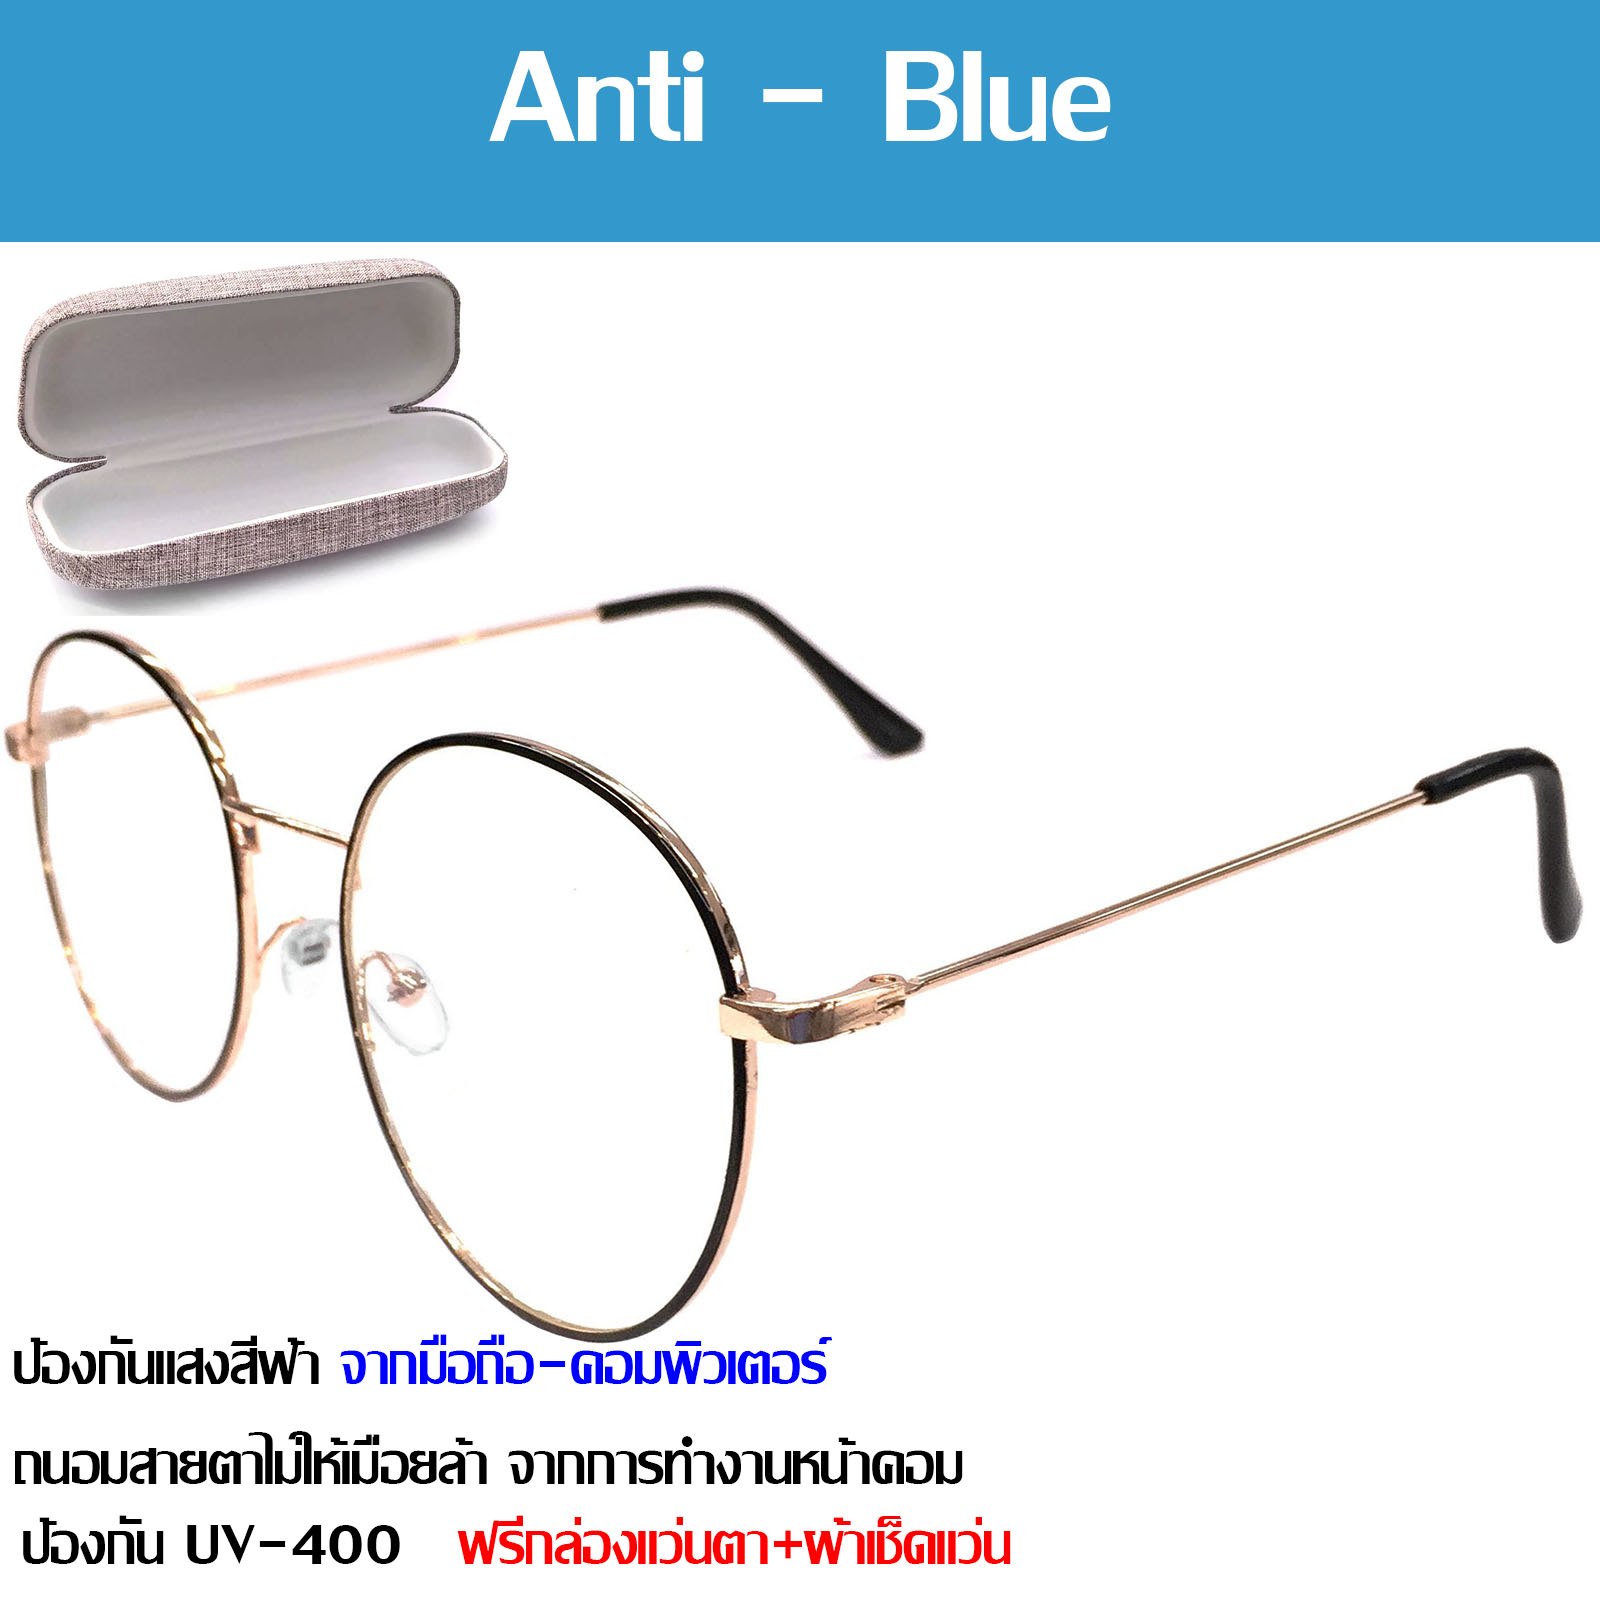 แว่นตา กรองแสงสีฟ้า แว่นกรองแสงคอม Blue Block 9862 แว่นตากรองแสง สีฟ้า 100% กัน UV 400% แว่นตา blue light Glasses กรองแสงมือถือ ถนอมสายตา แว่นตากรองแสง